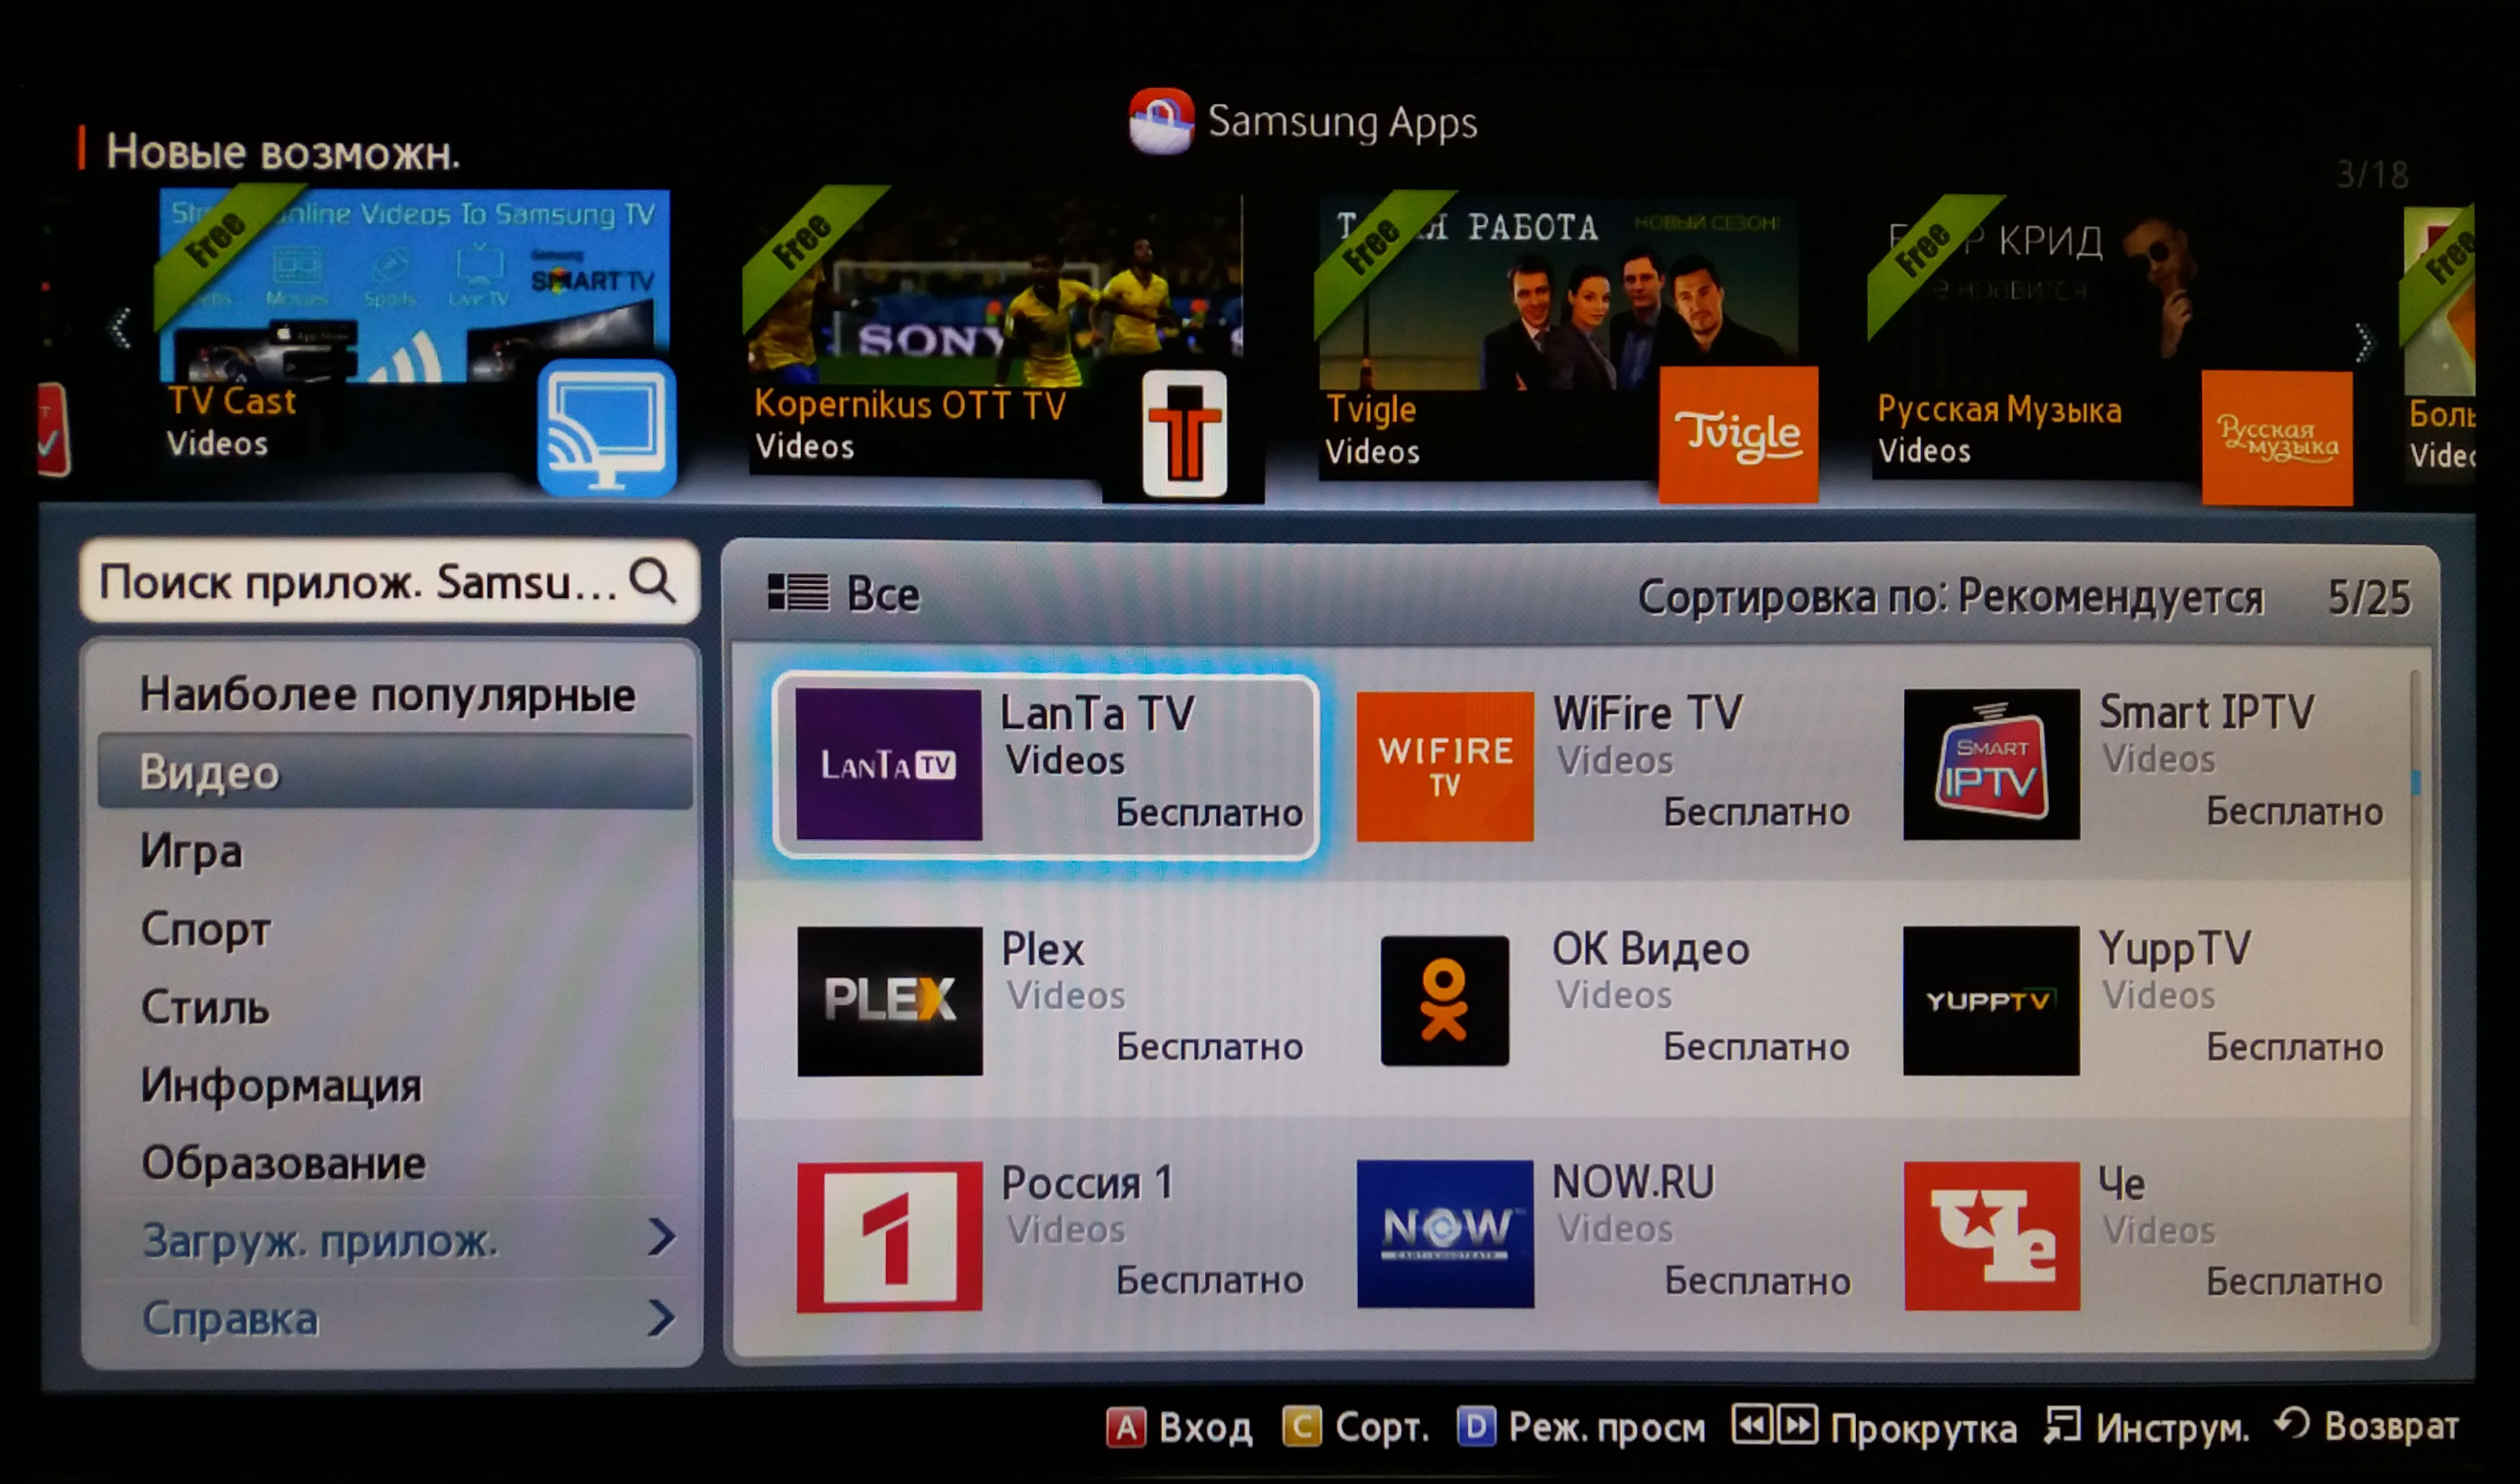 Приложение для просмотра телевизора на смарт. Samsung Smart TV приложения. Samsung apps для Smart TV. IPTV на смарт телевизоре. Samsung apps на телевизоре.